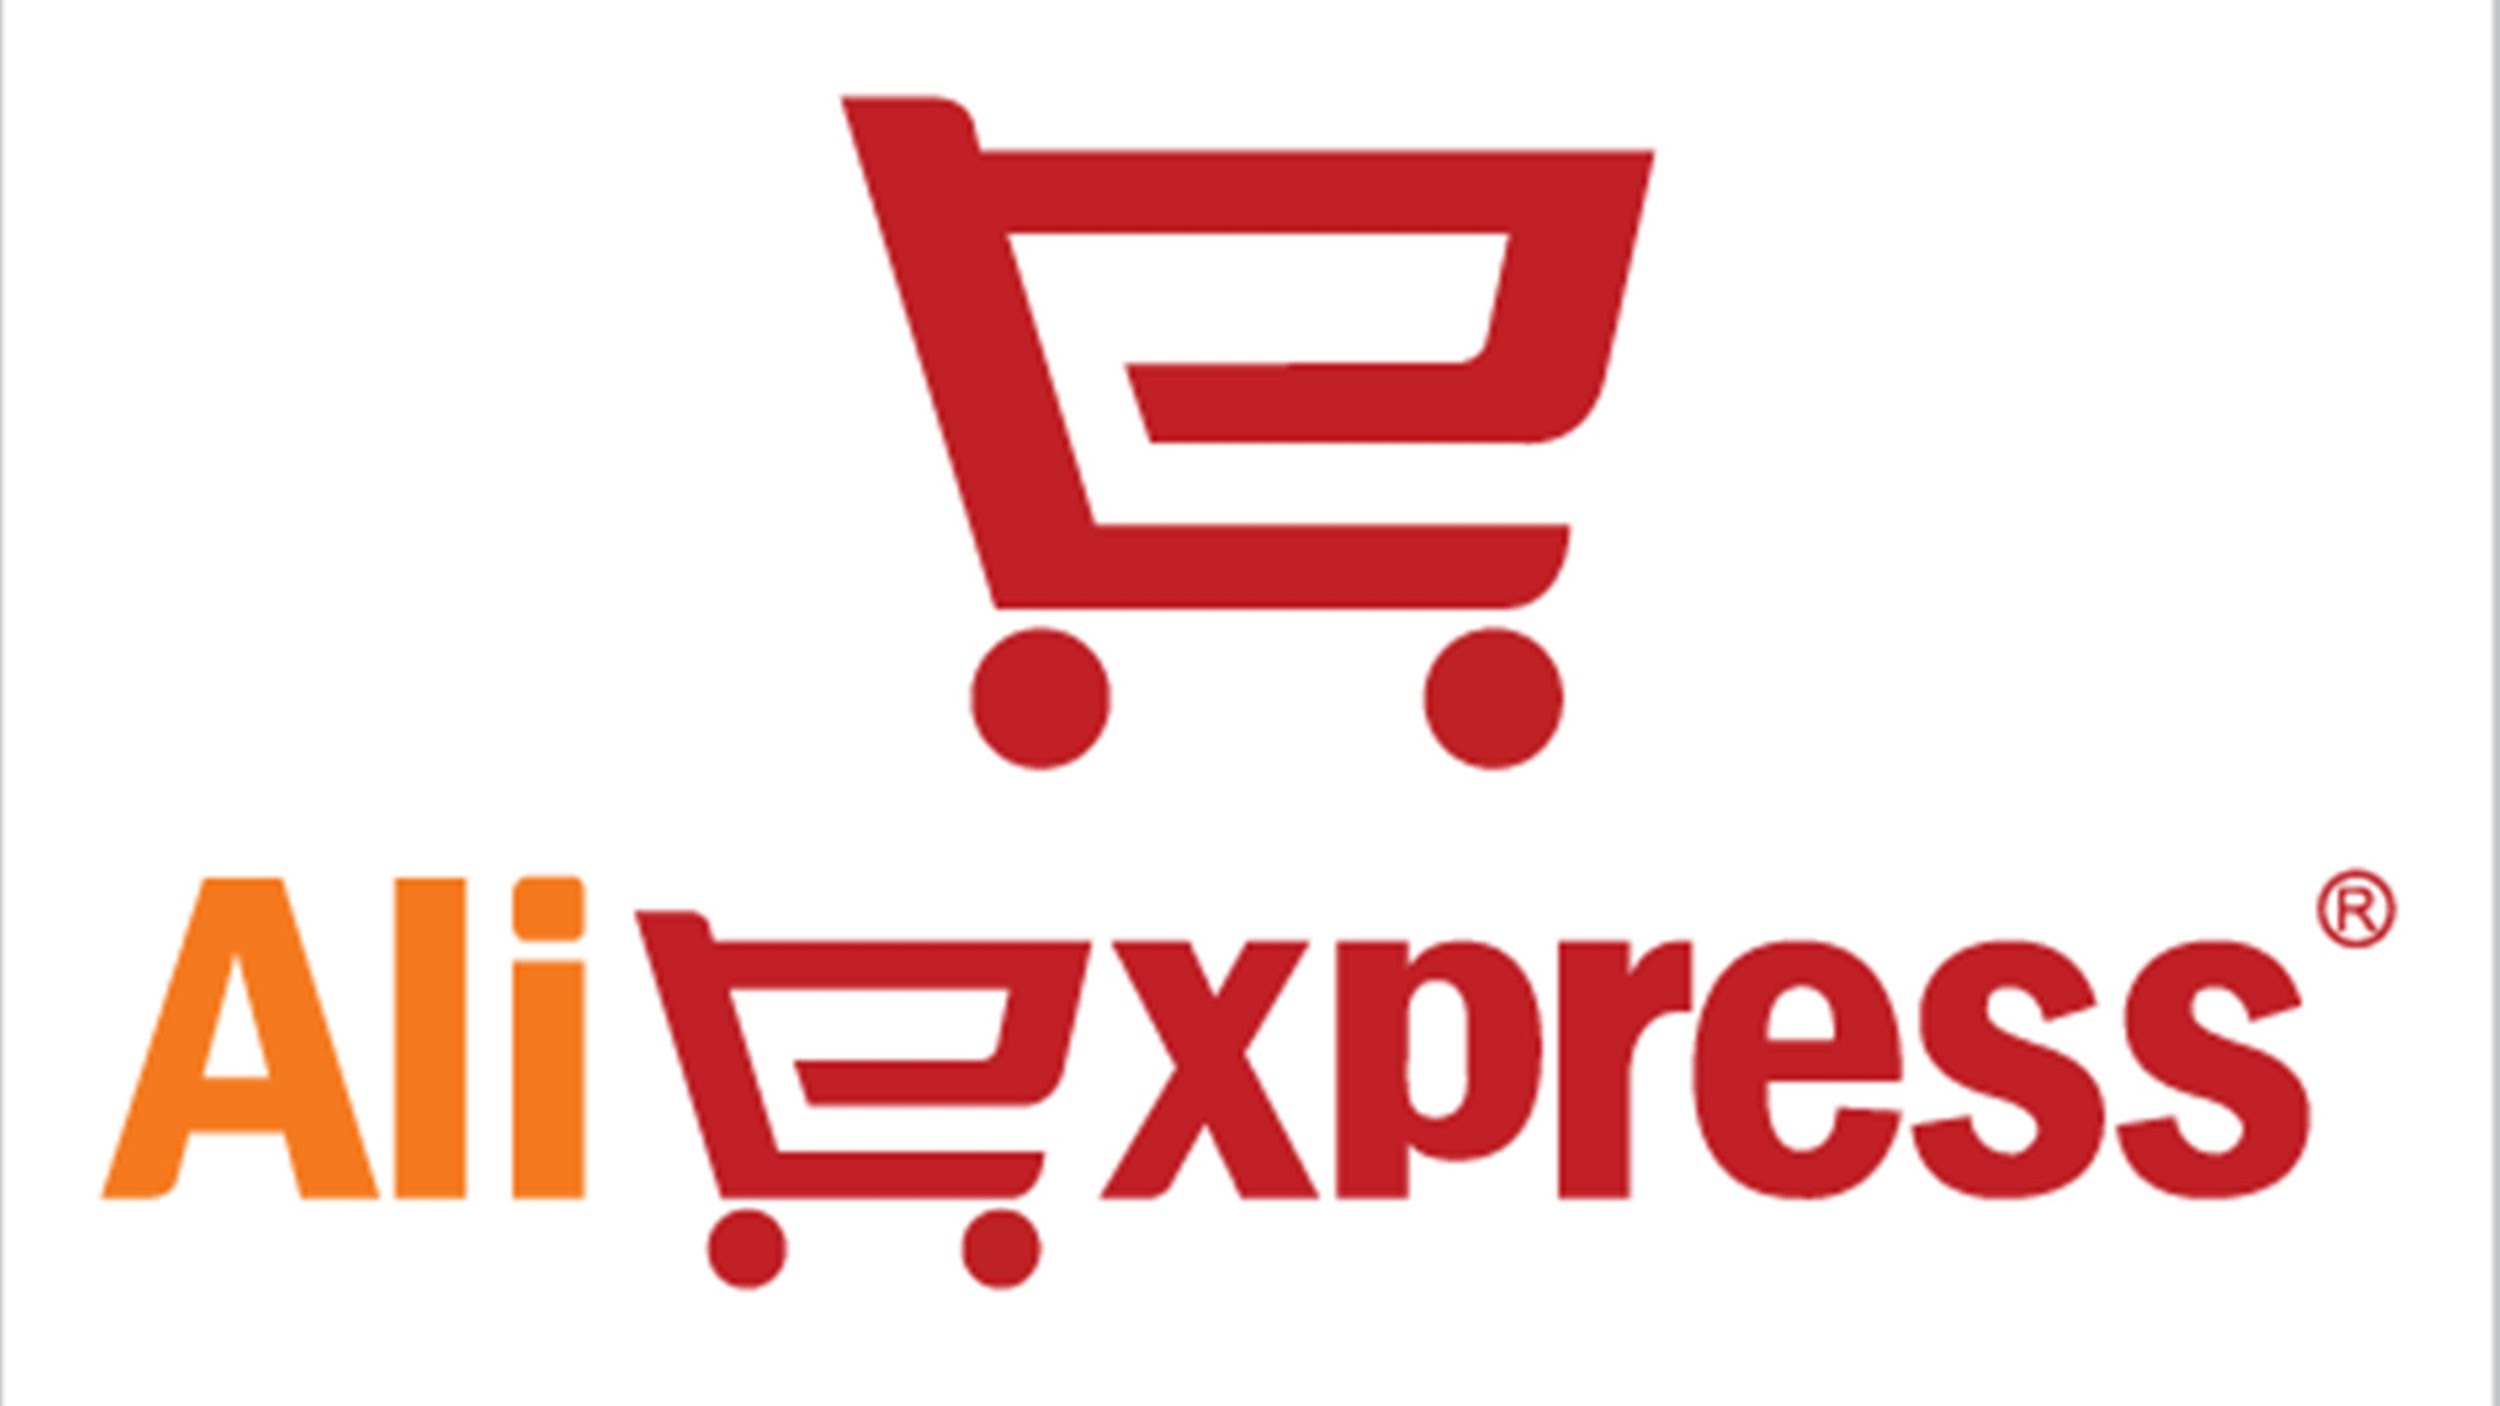 Ali Express como exemplo de site de vendas online